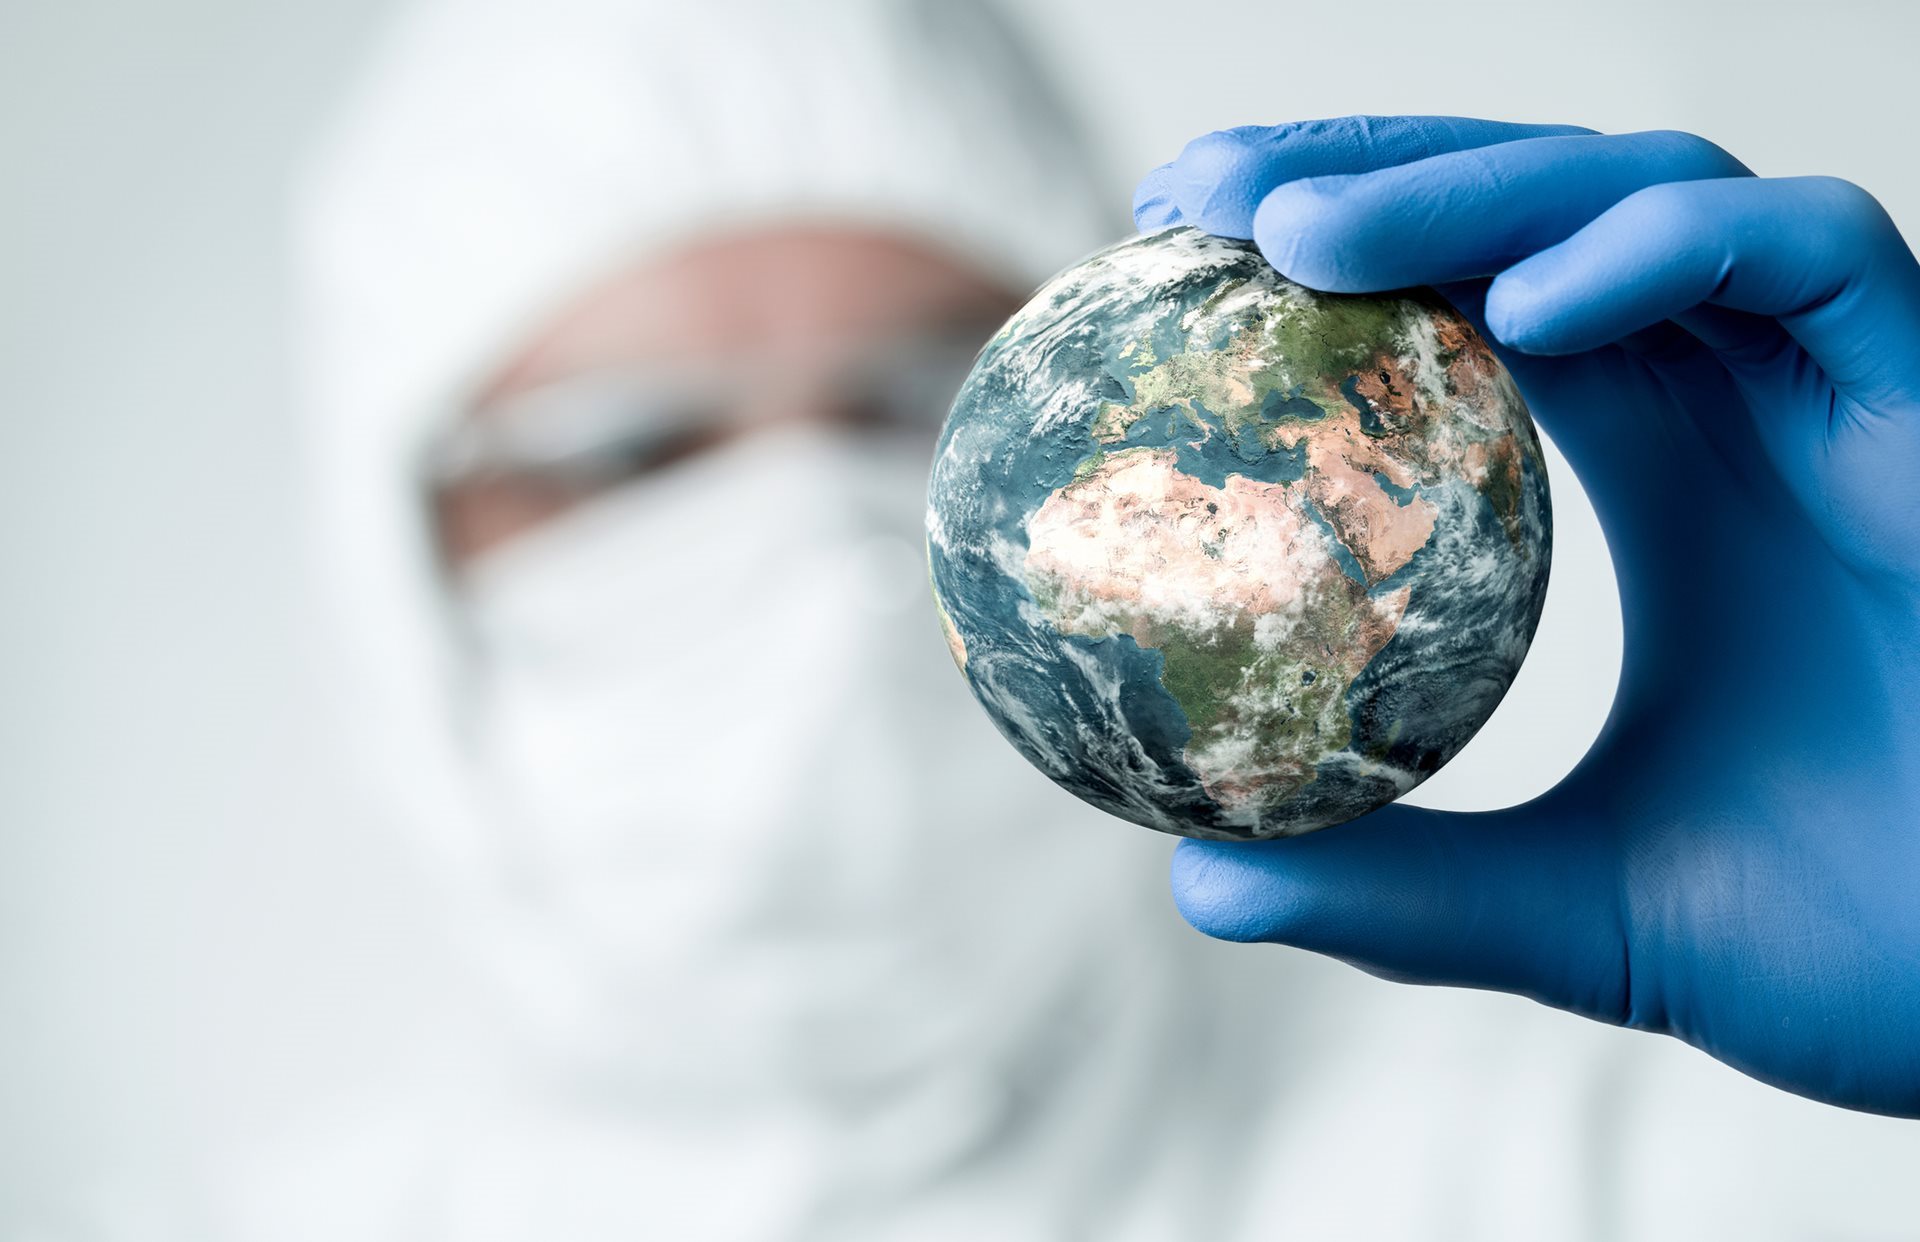 Seks millioner euro for forskning på å opprettholde regelmessig omsorg under nye pandemier – Mot et mer robust helsesystem i møte med store helsekriser